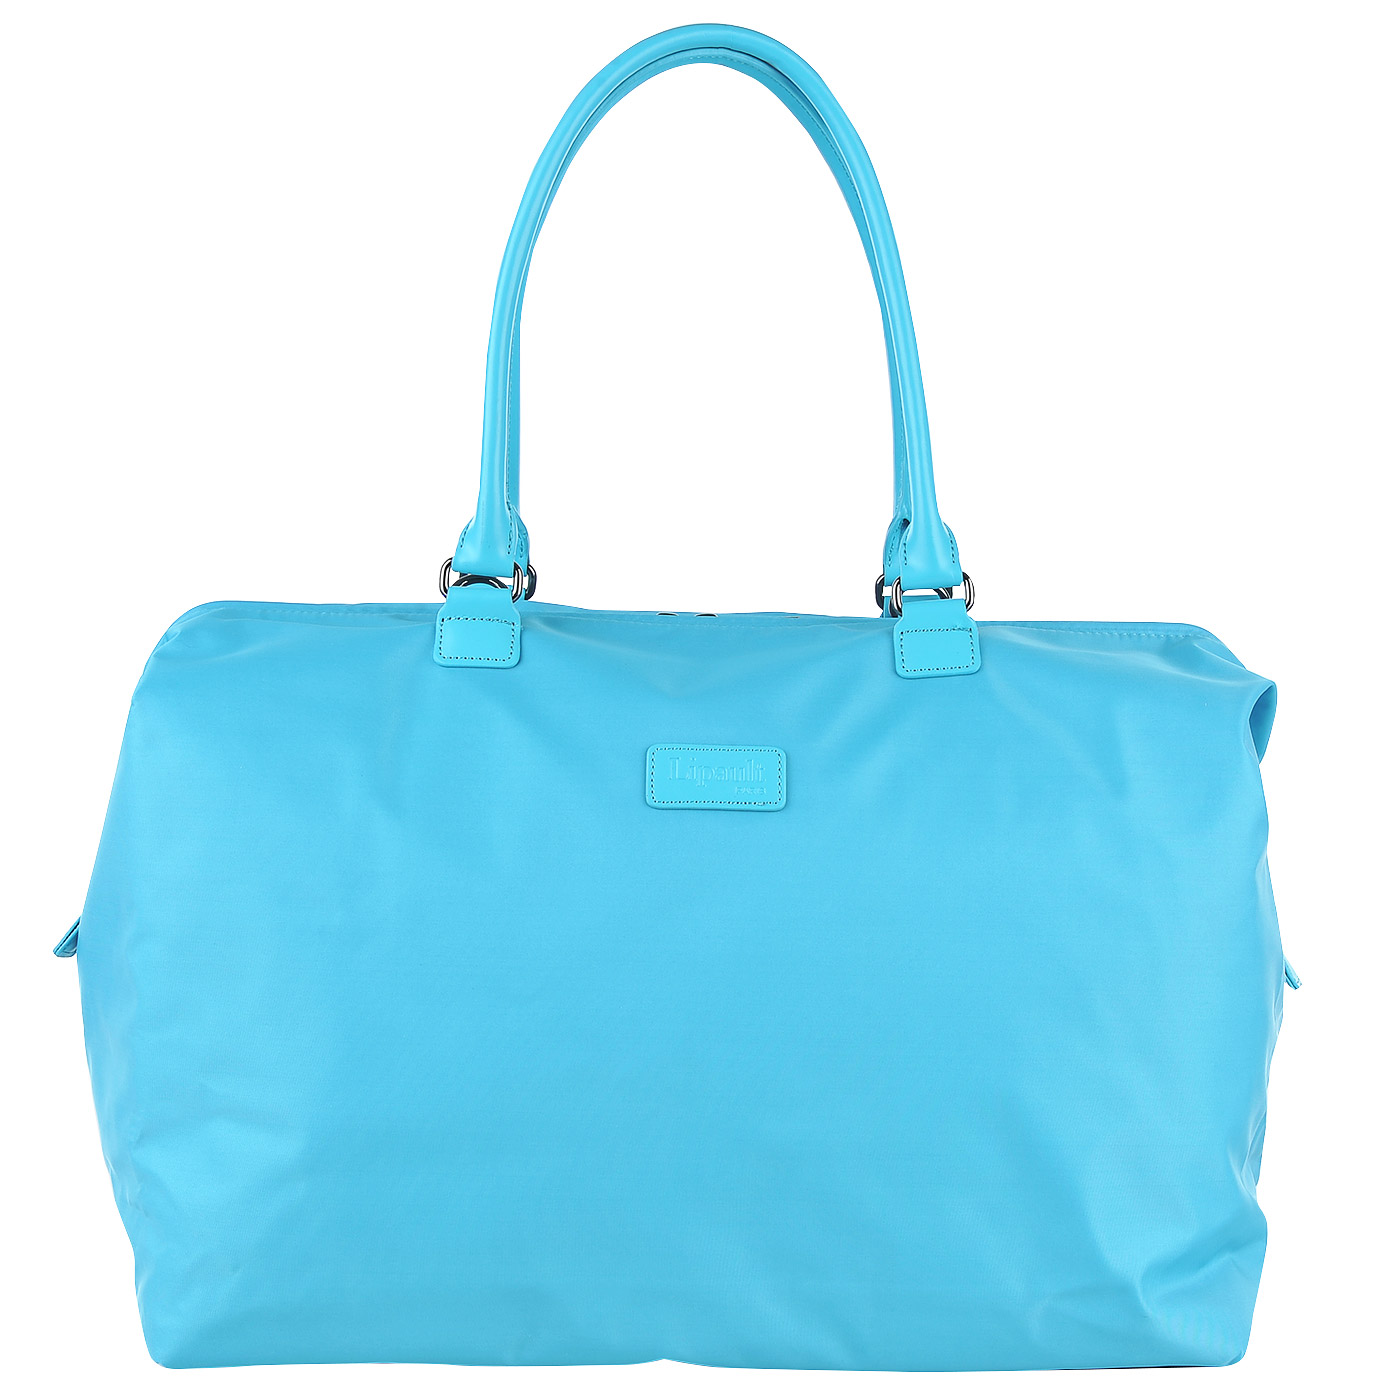 Текстильная дорожная сумка голубого цвета Lipault